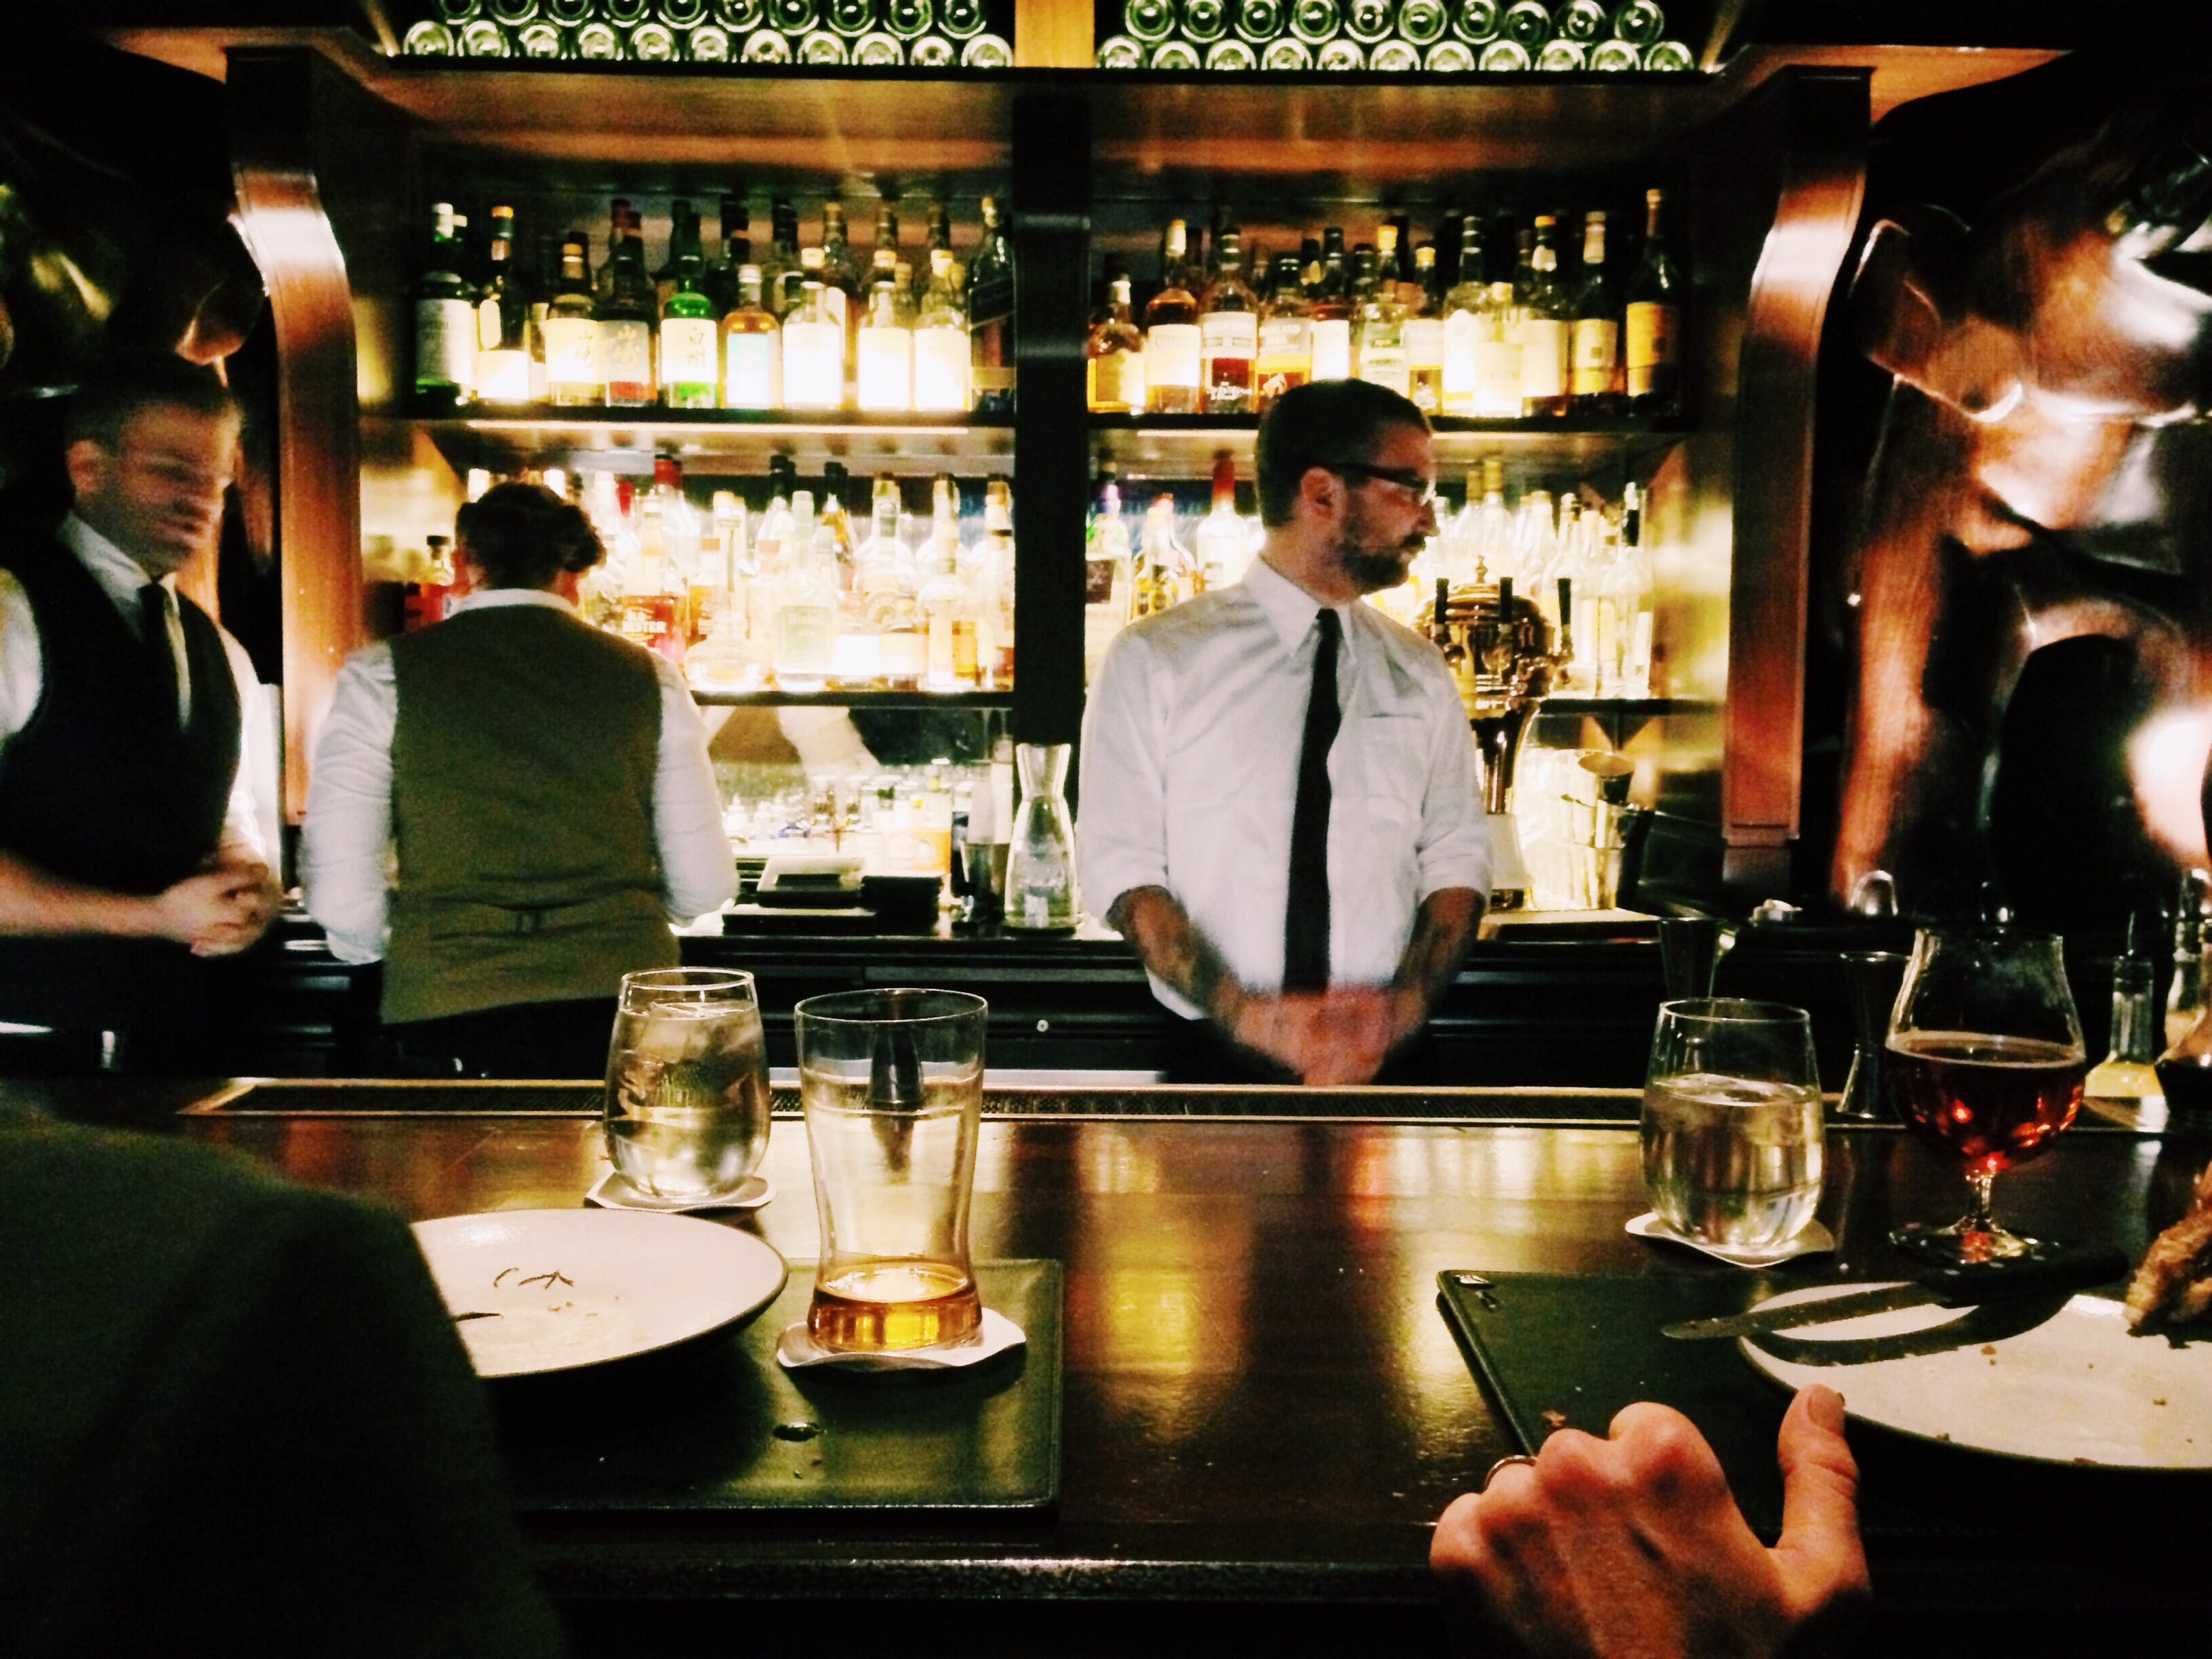 Bild zeigt Beschäftigte einer Bar bei der Arbeit. In der Gastronomie ist die "Kündigung auf Zeit" allzu verbreitet.